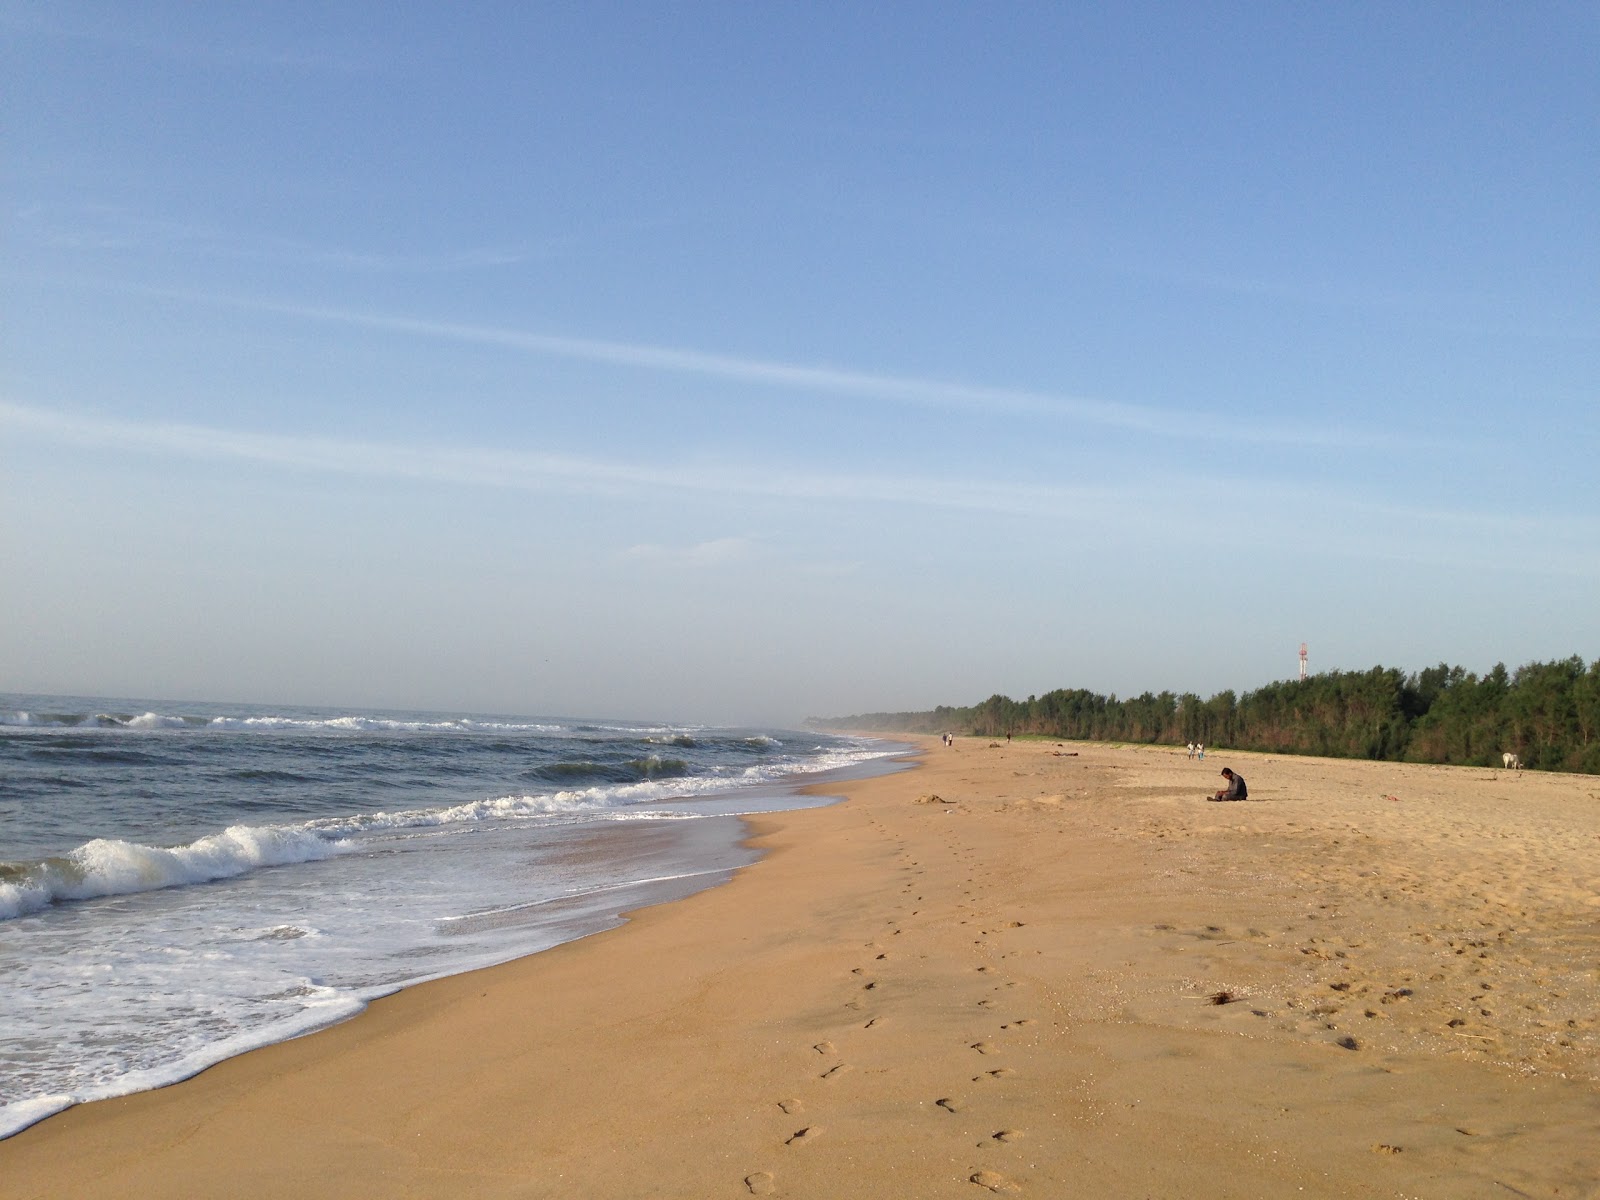 Zdjęcie Kalpakkam Beach z powierzchnią jasny piasek